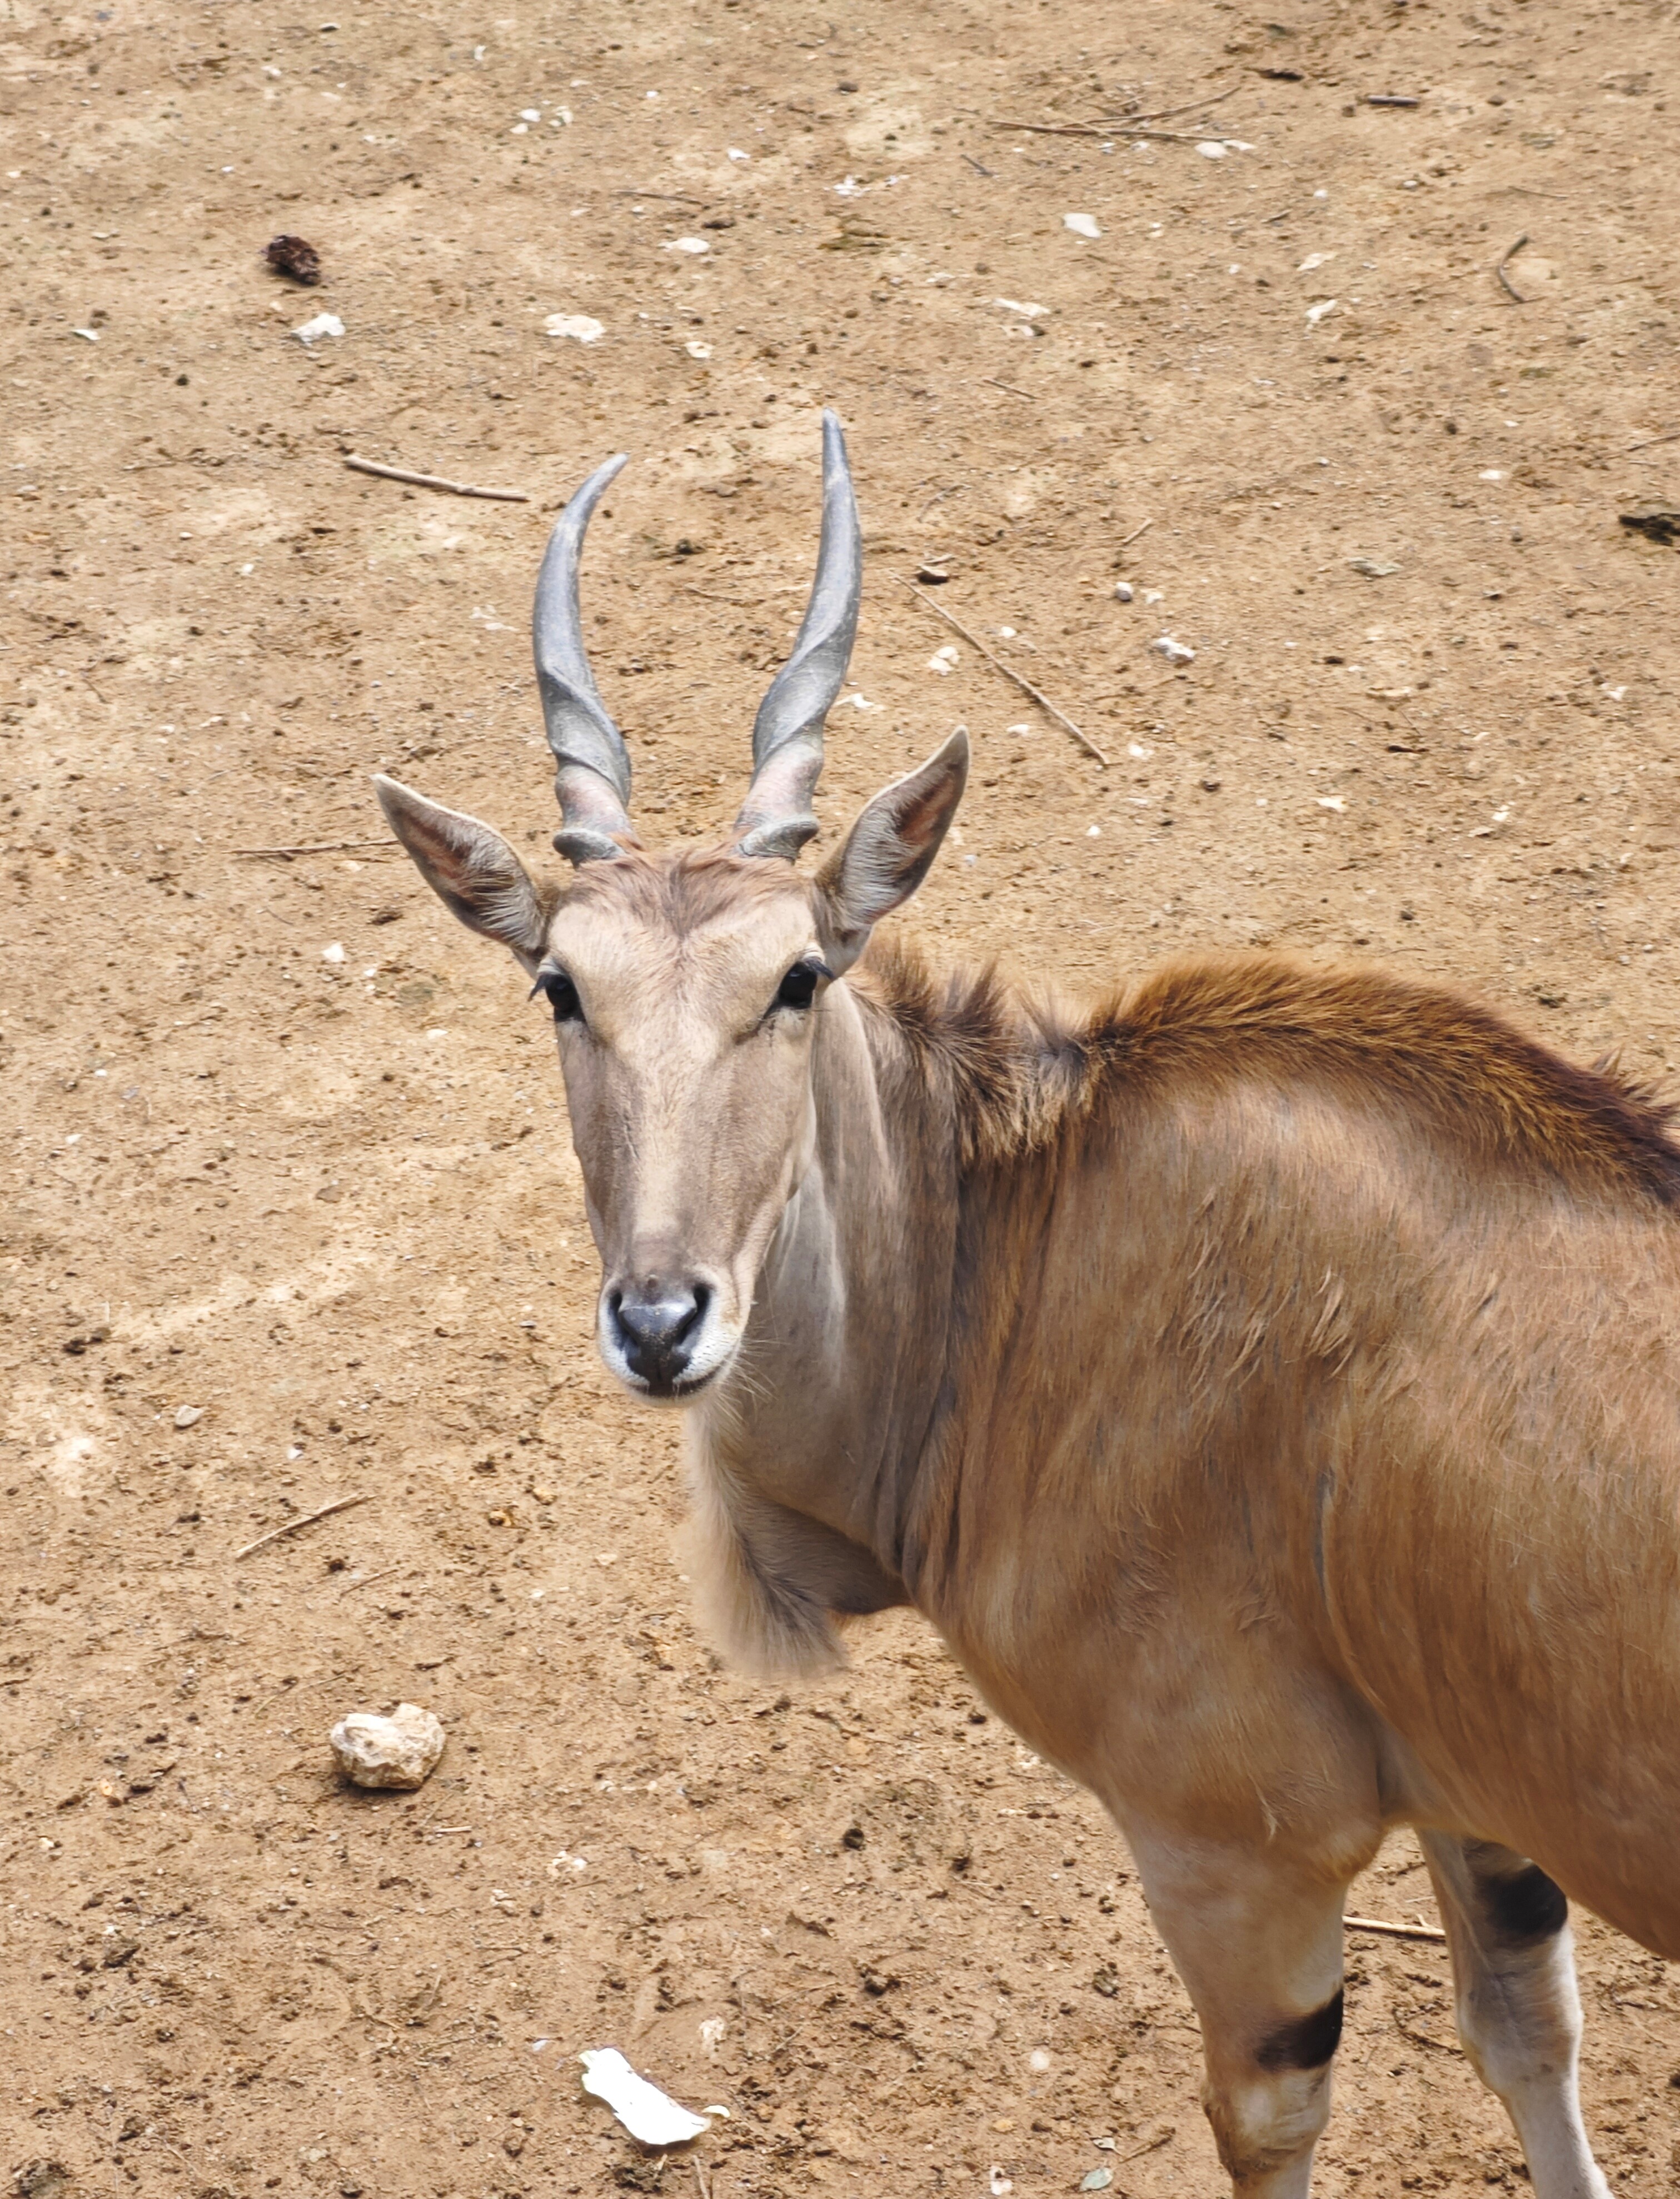 浙江安吉动物园,野生动物种类繁多,是一个值得去的地方